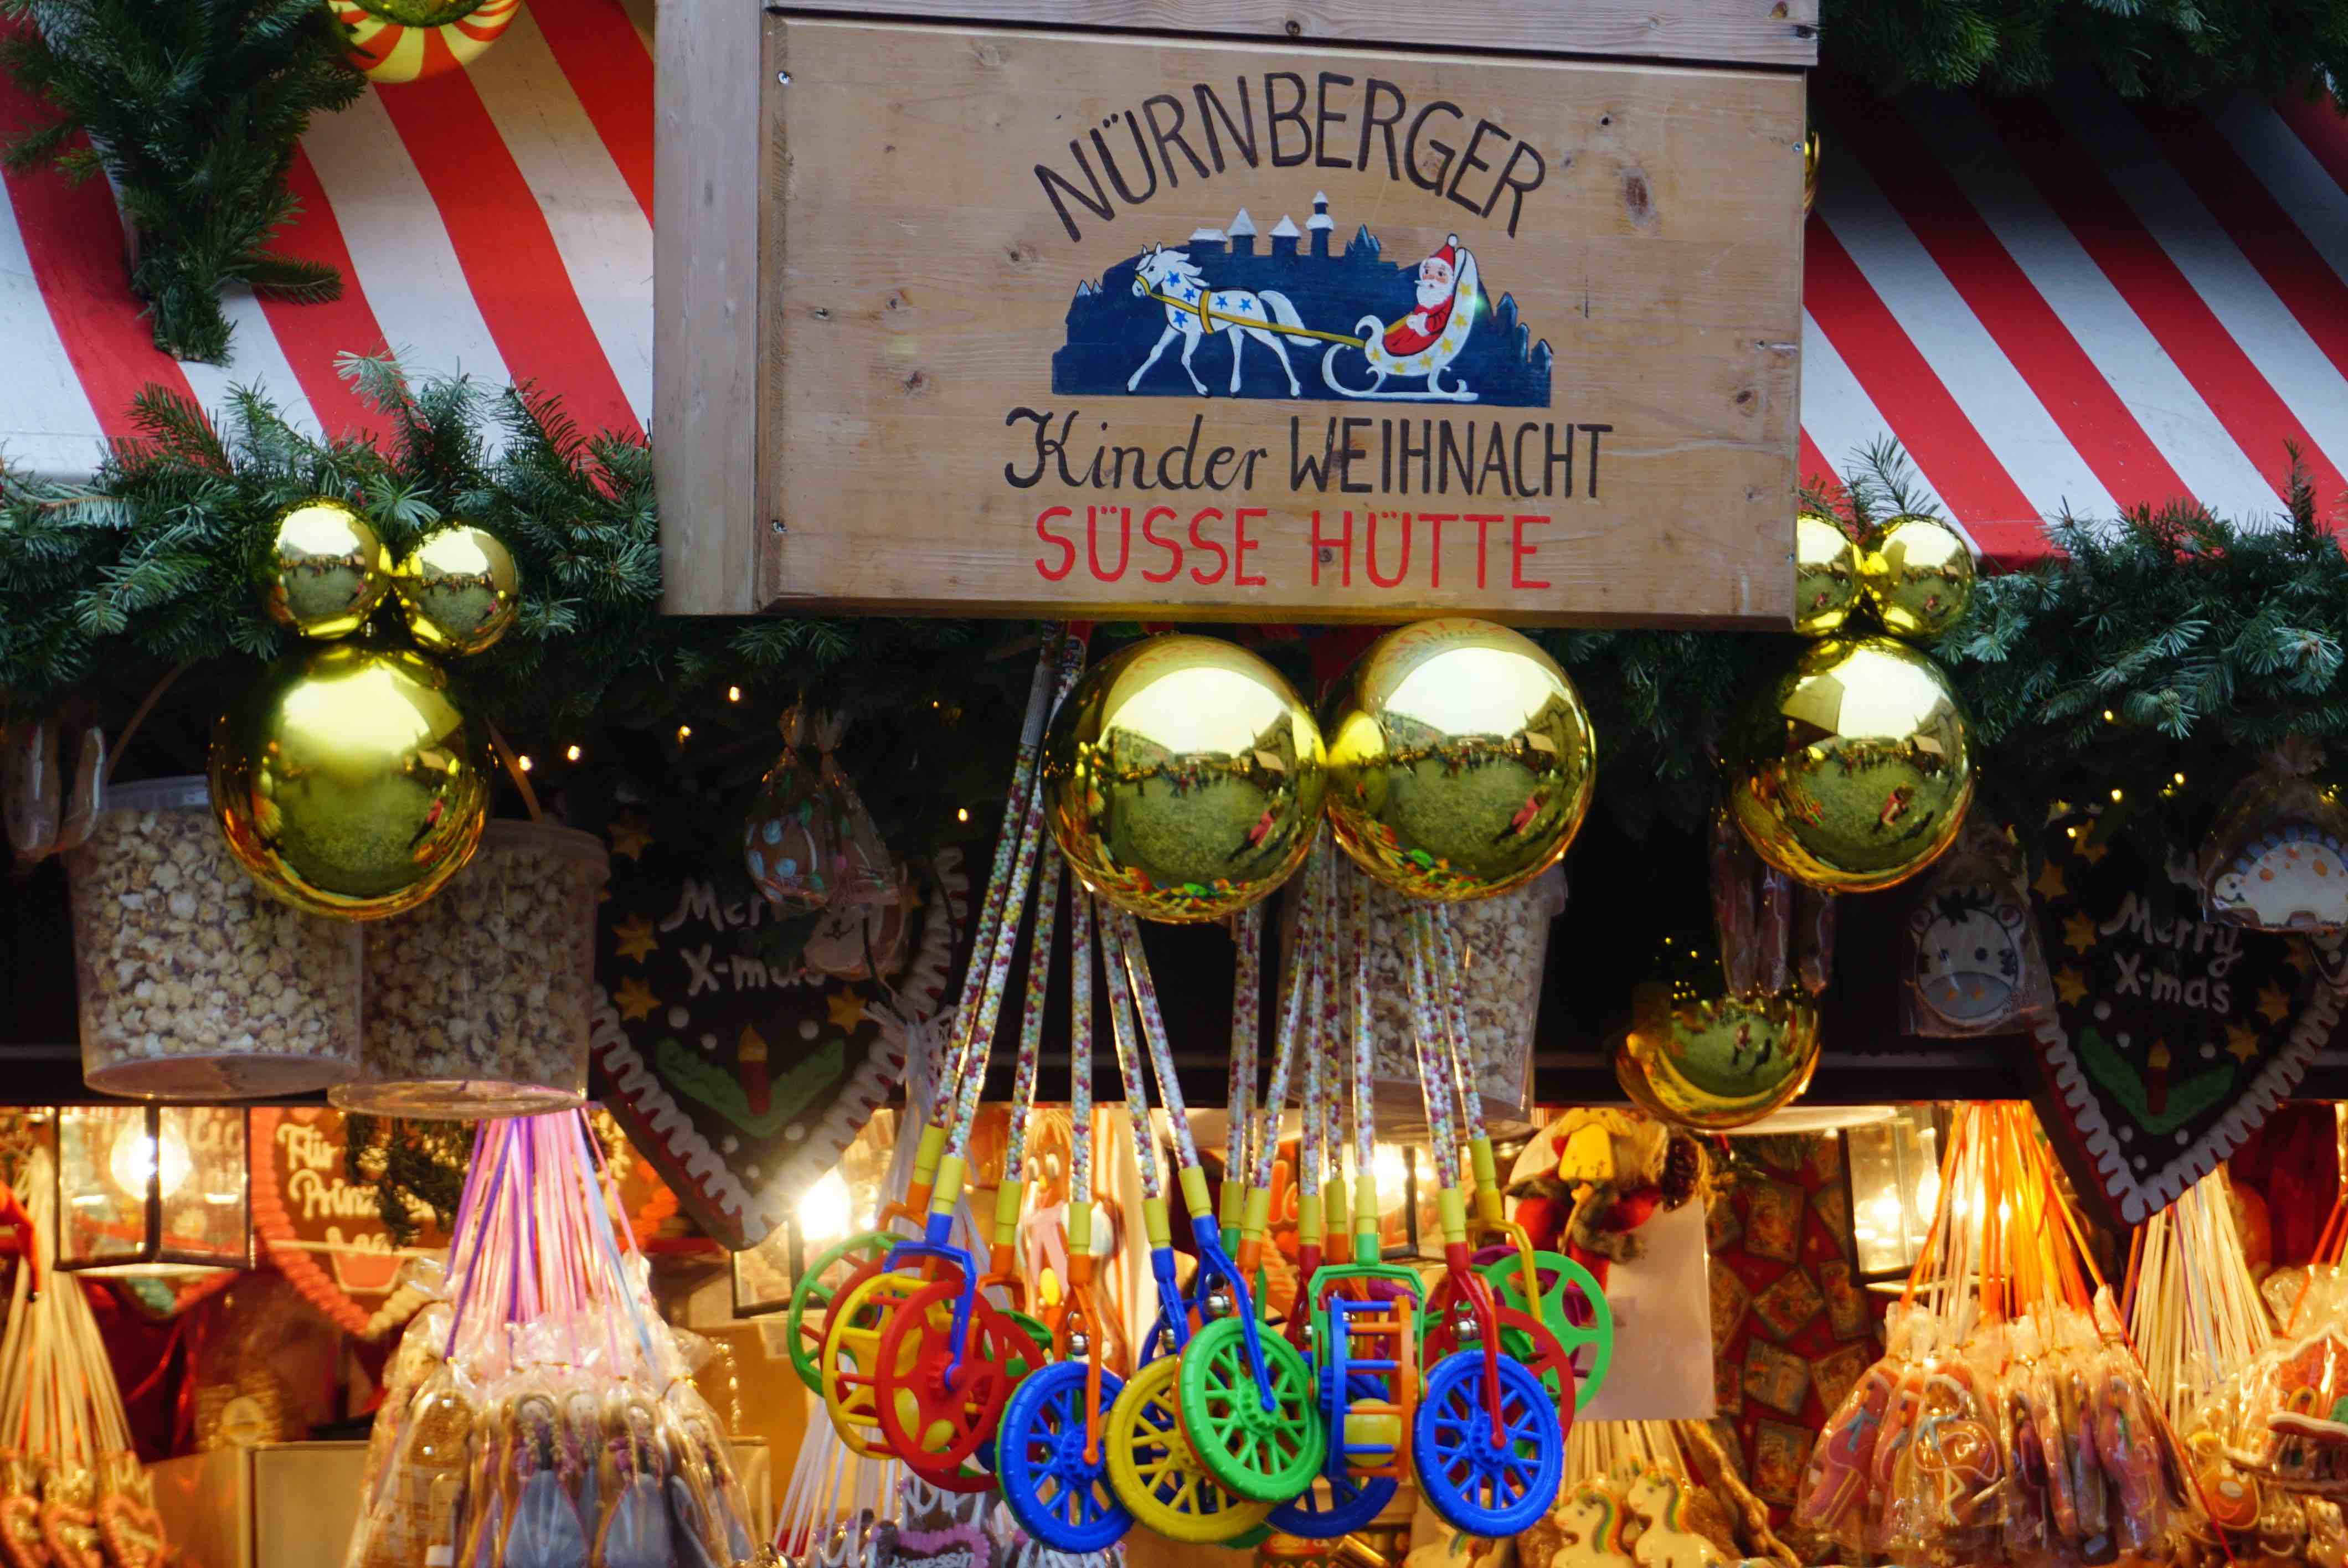 Nürnberg Kinderweihnachtsmarkt